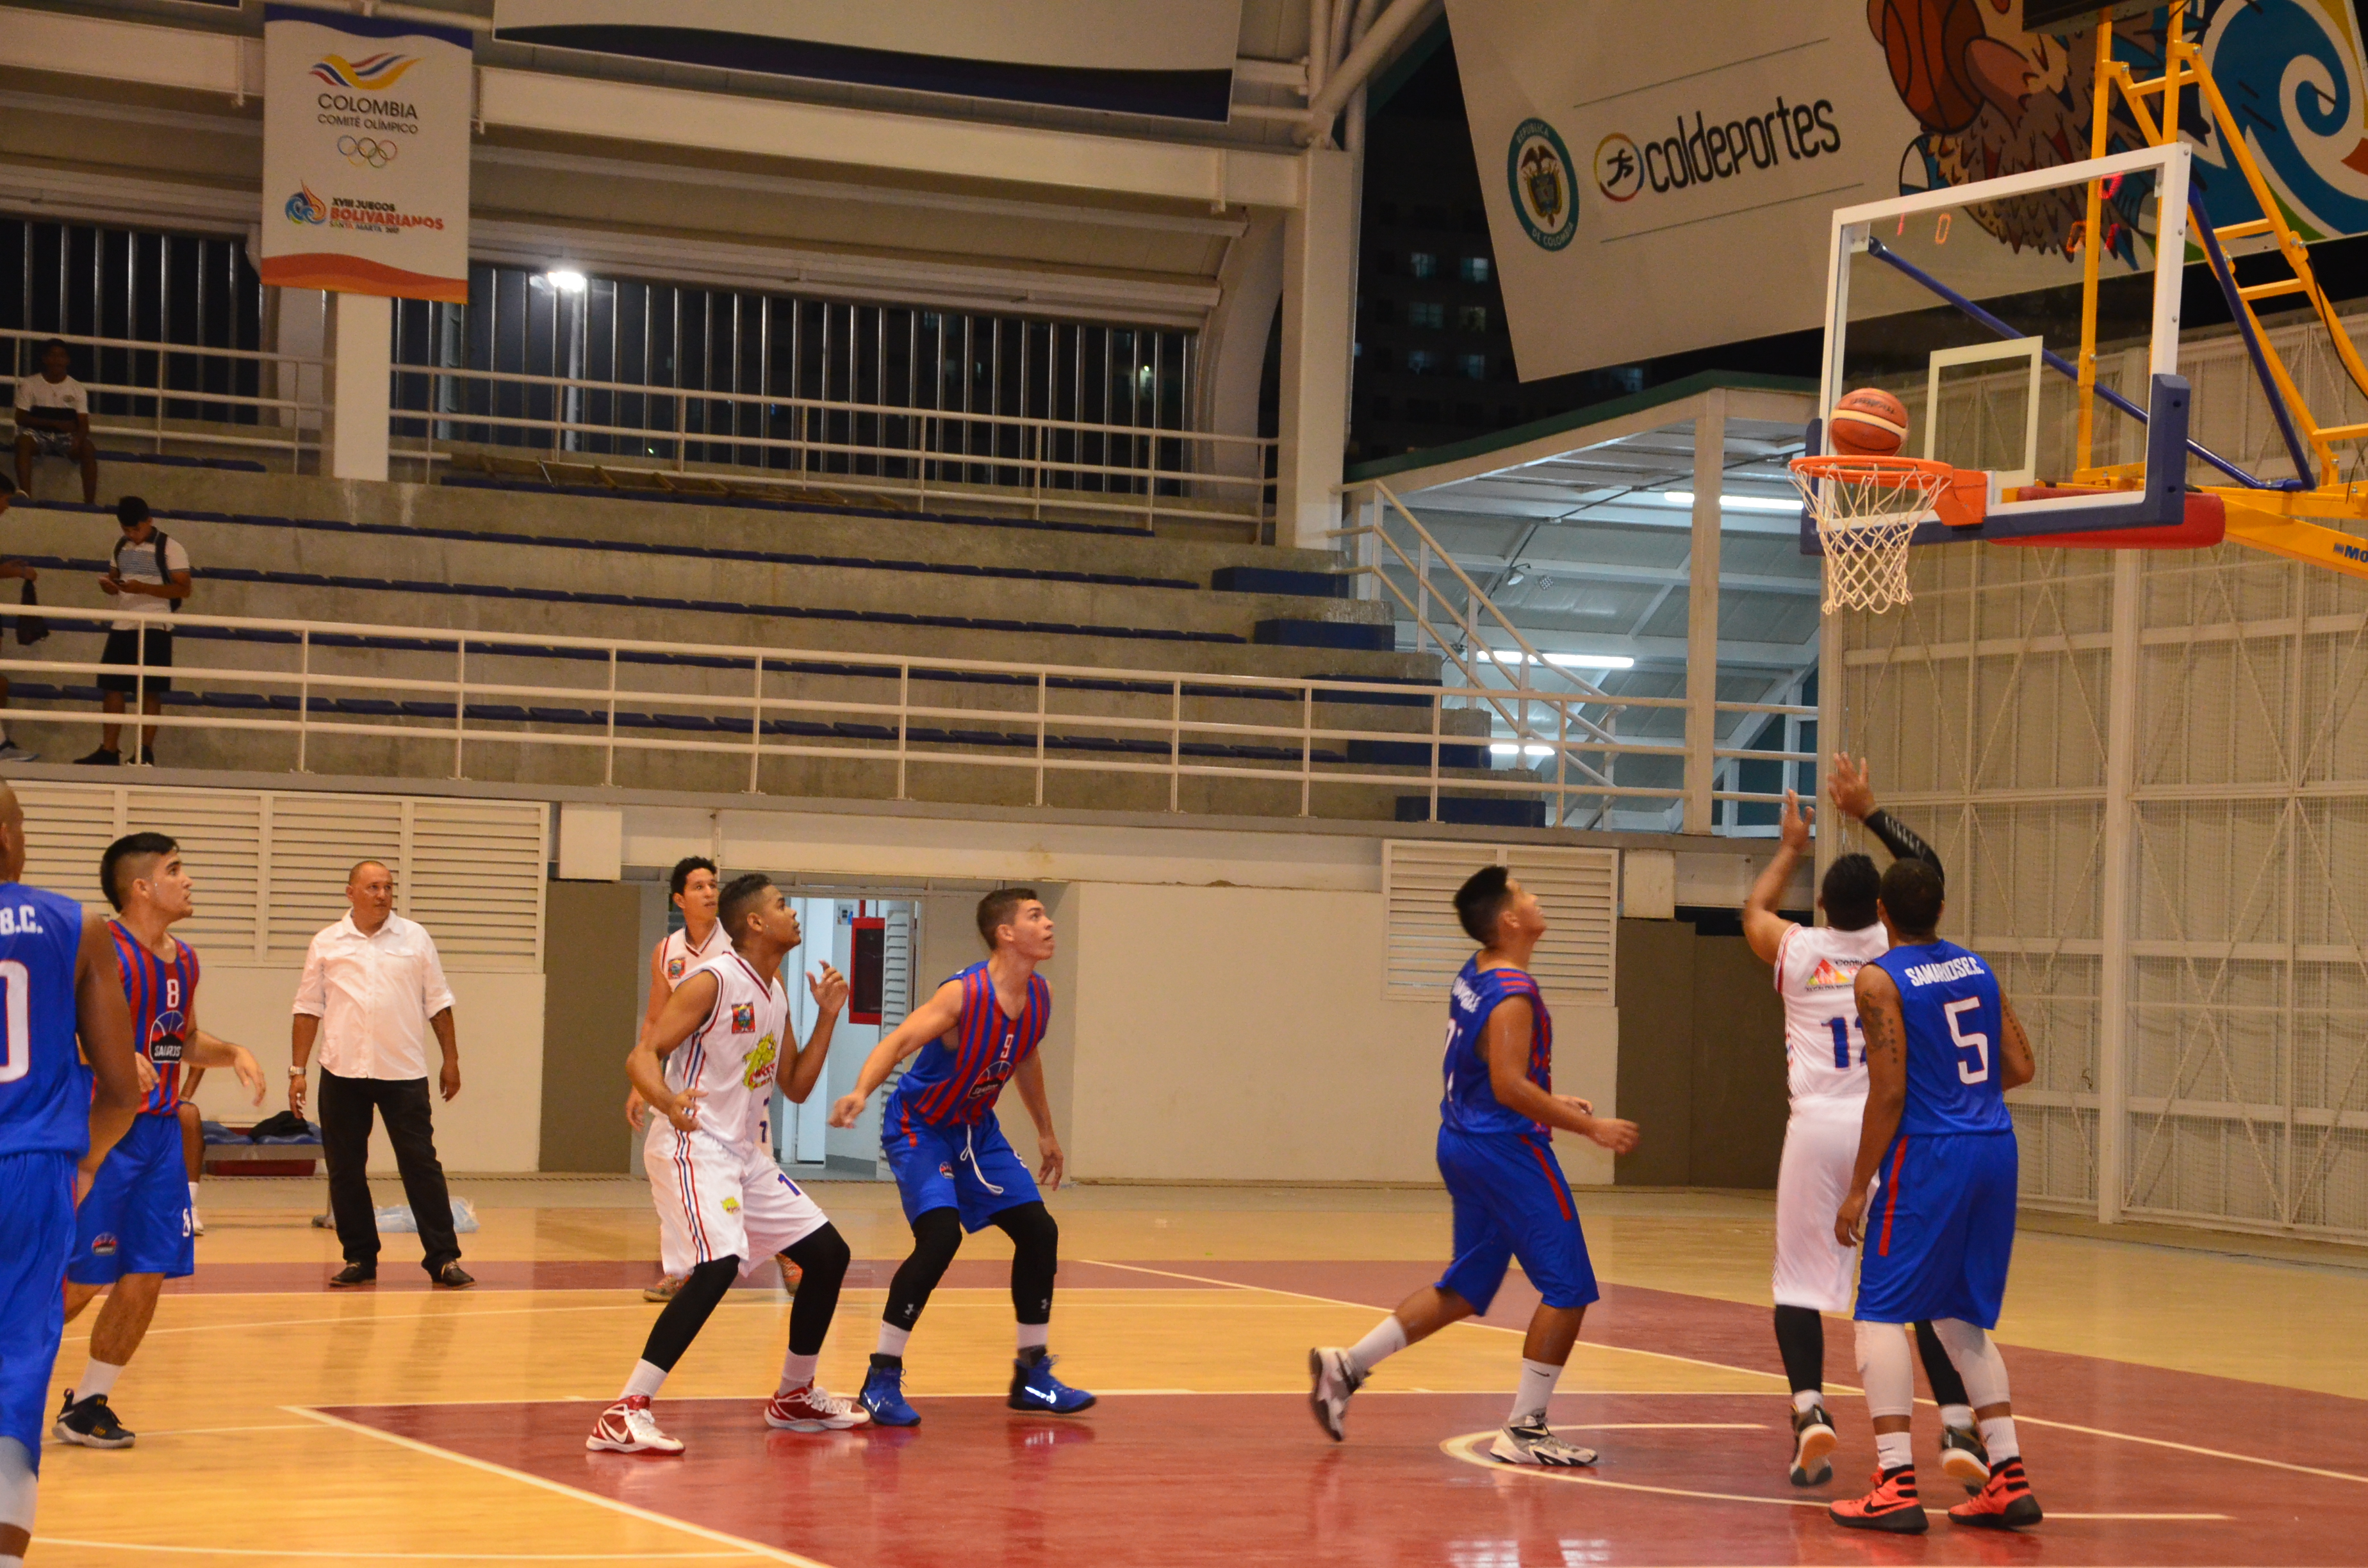 Samarios Basketbal Club venció en dos oportunidades a Guajiros de Riohacha 89 a 52 en el primer juego y 83 a 54 en el segundo. 